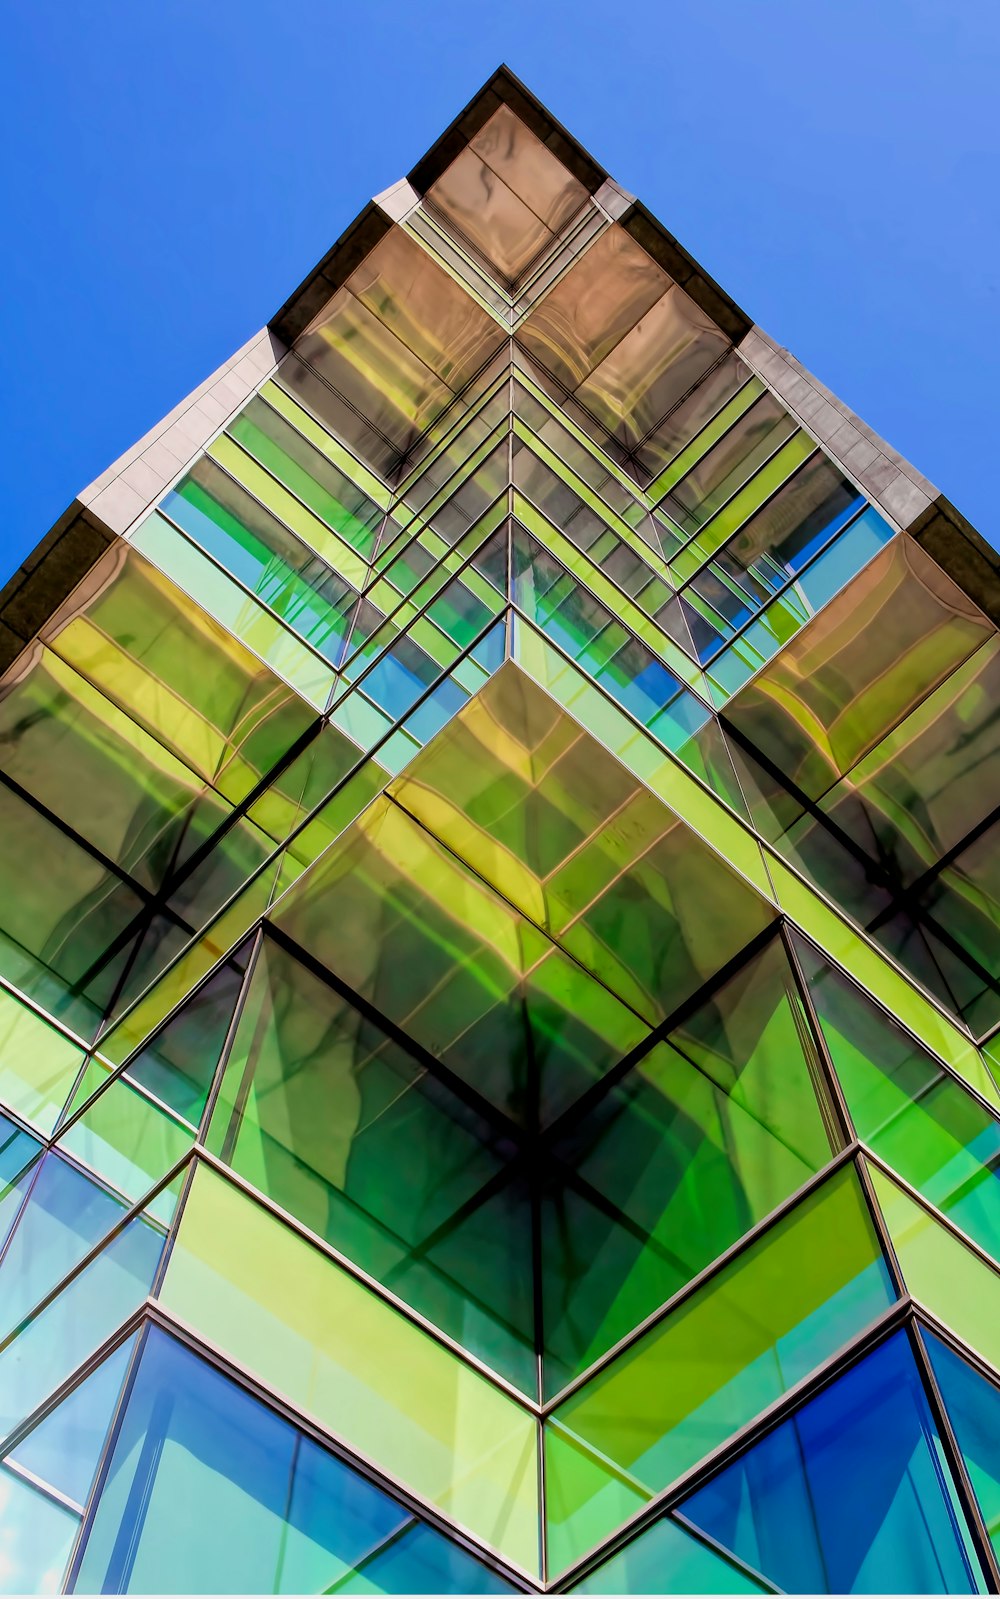 Photographie d’architecture d’un bâtiment en verre vert et bleu